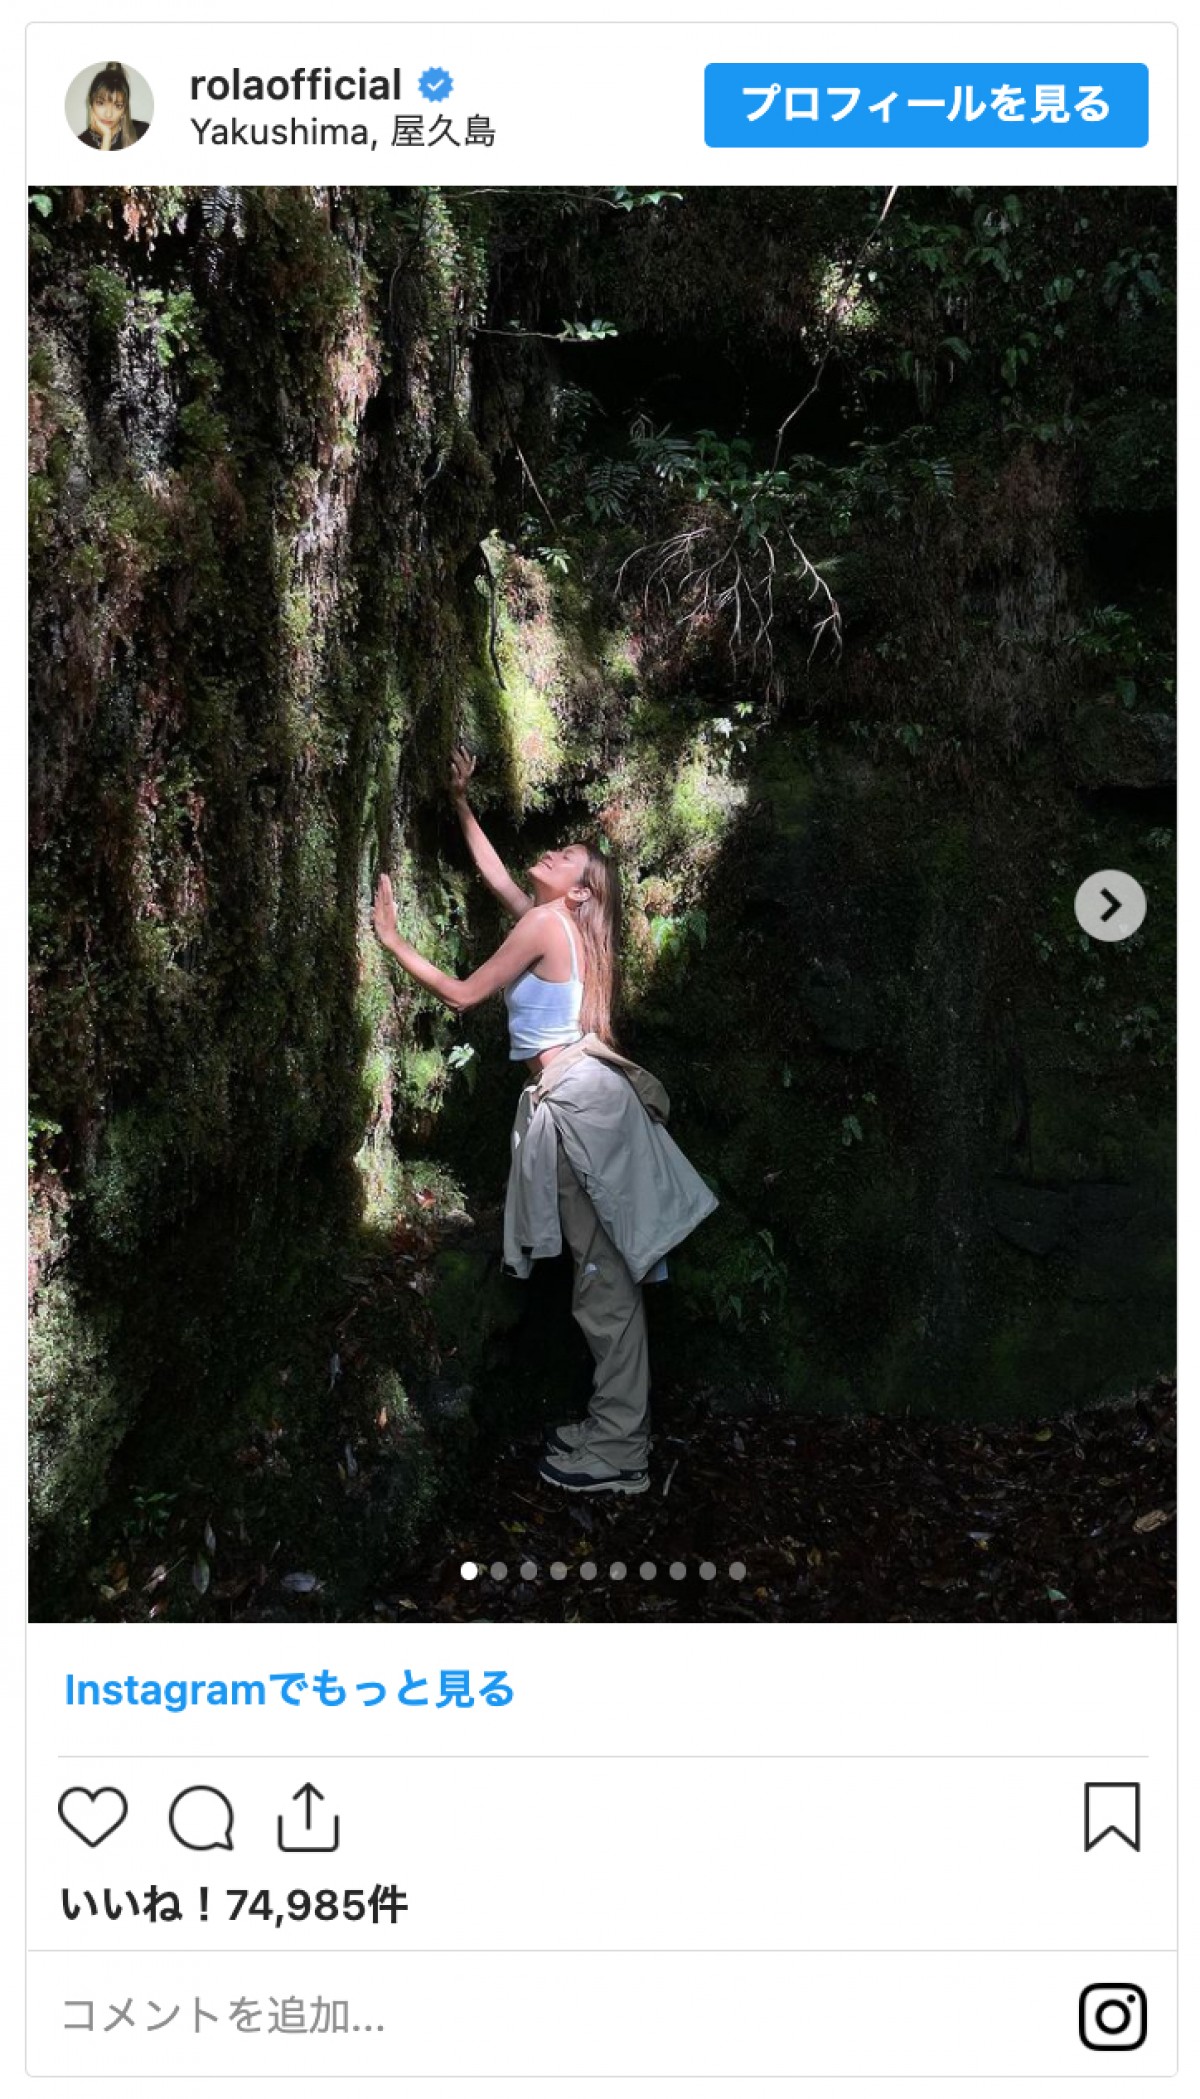 ローラ、屋久島で自然を満喫　裸足で歩くナチュラルな姿にファン「素敵な光景」「ローラちゃんいい顔」